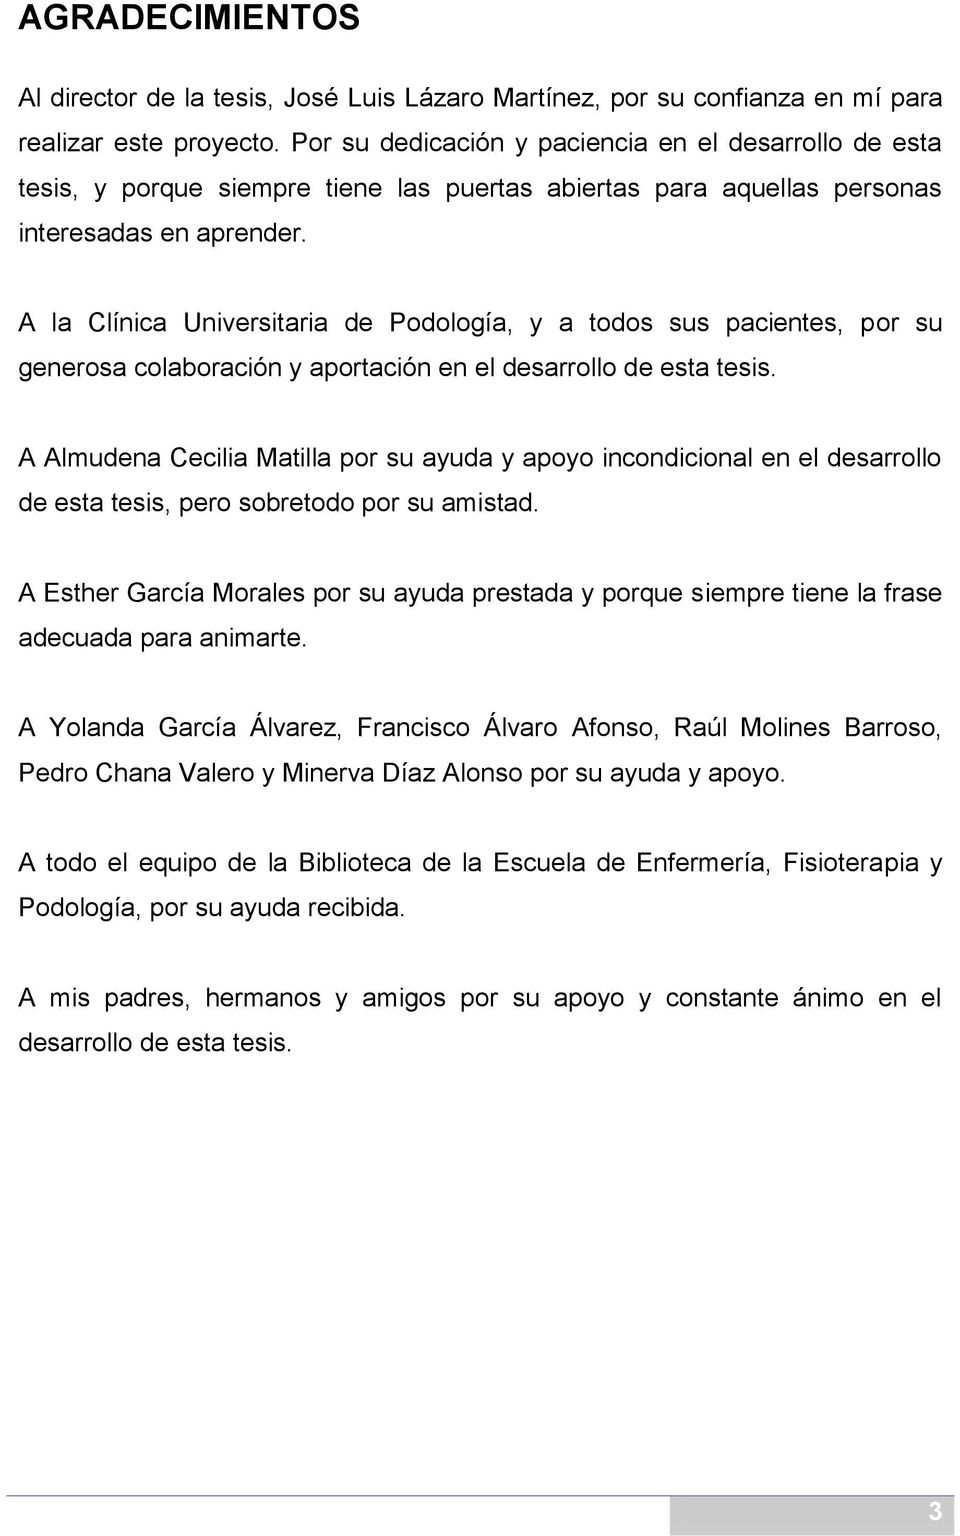 A la Clínica Universitaria de Podología, y a todos sus pacientes, por su generosa colaboración y aportación en el desarrollo de esta tesis.